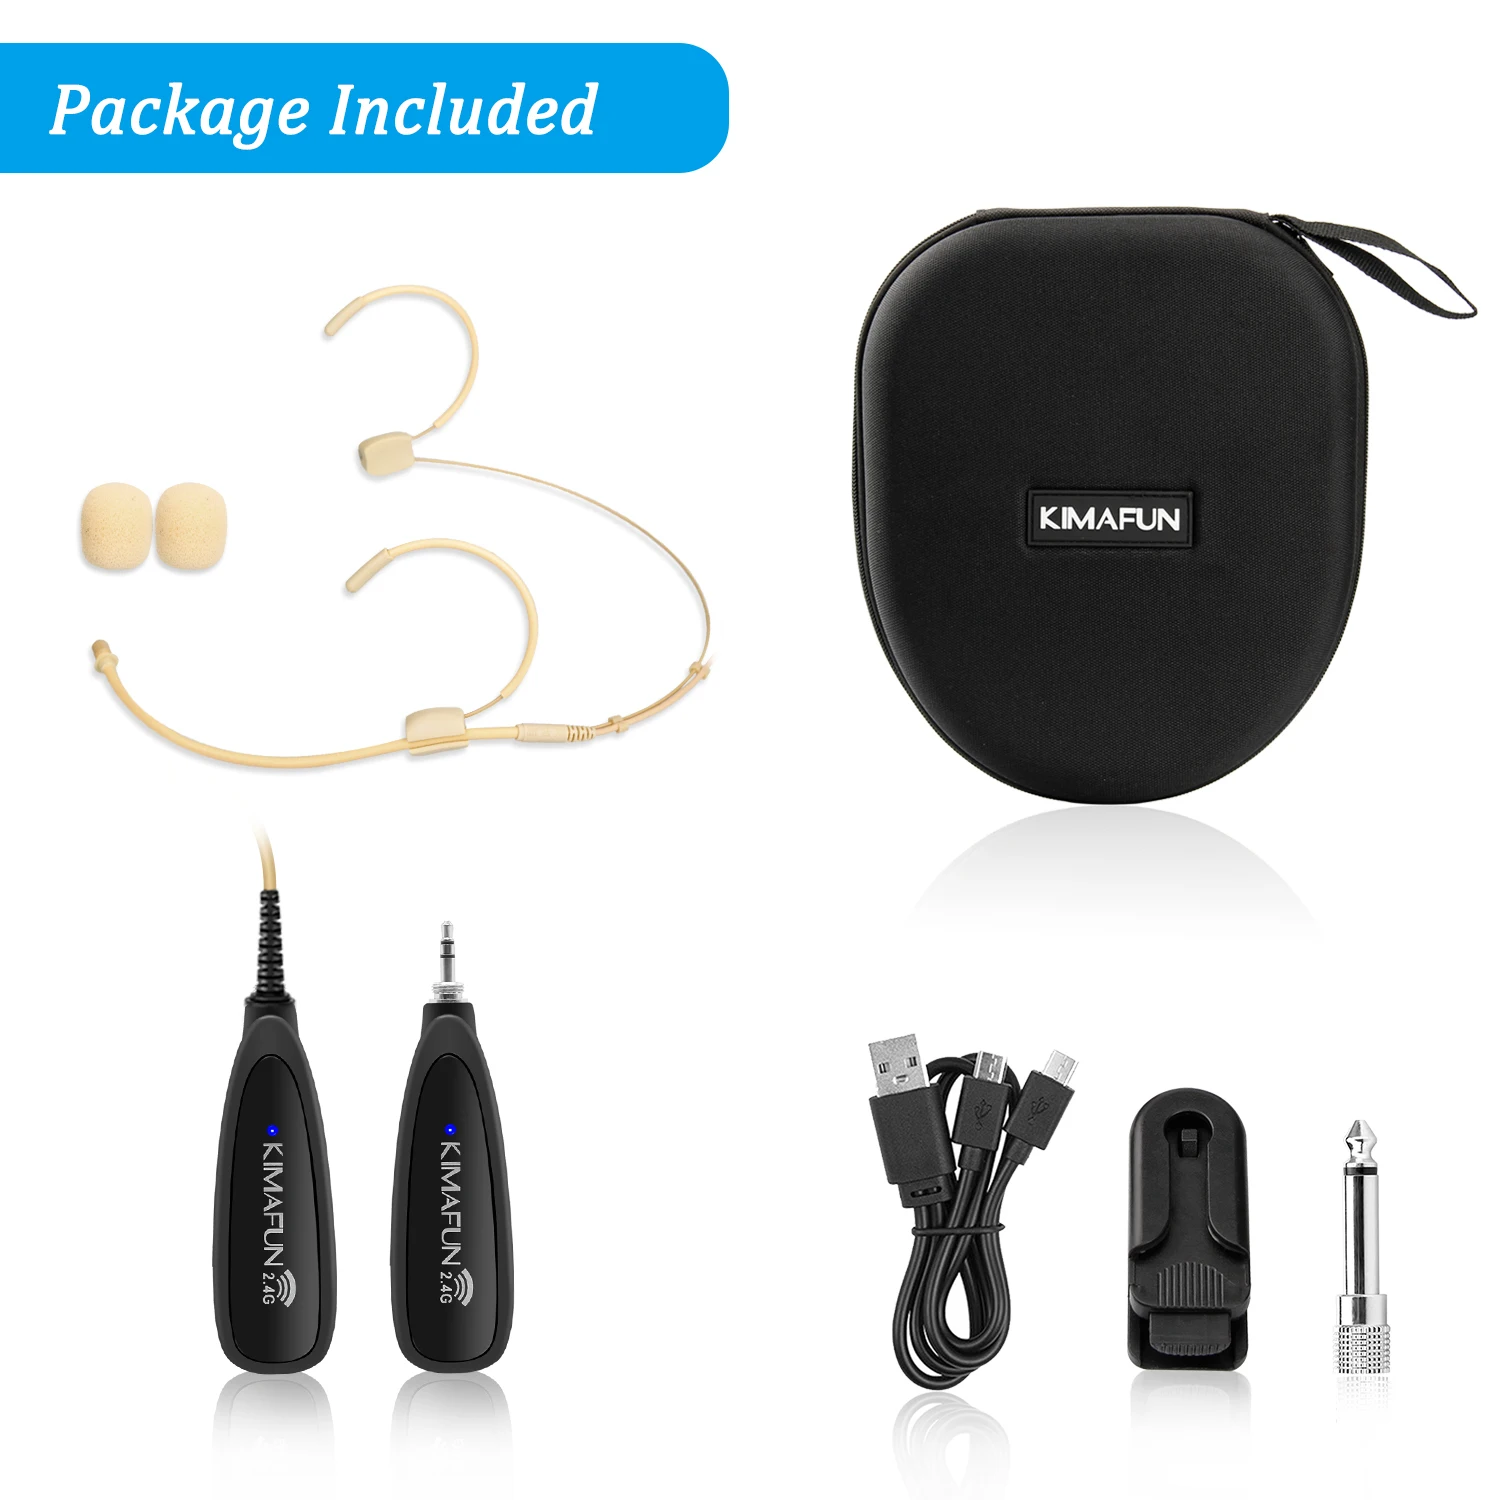 Mikrofony Kimafun 2.4G bezprzewodowy system słuchawkowy systemu mikrofonu i przenośnik 2 w 1 do nagrywania wzmacniacza głosowego